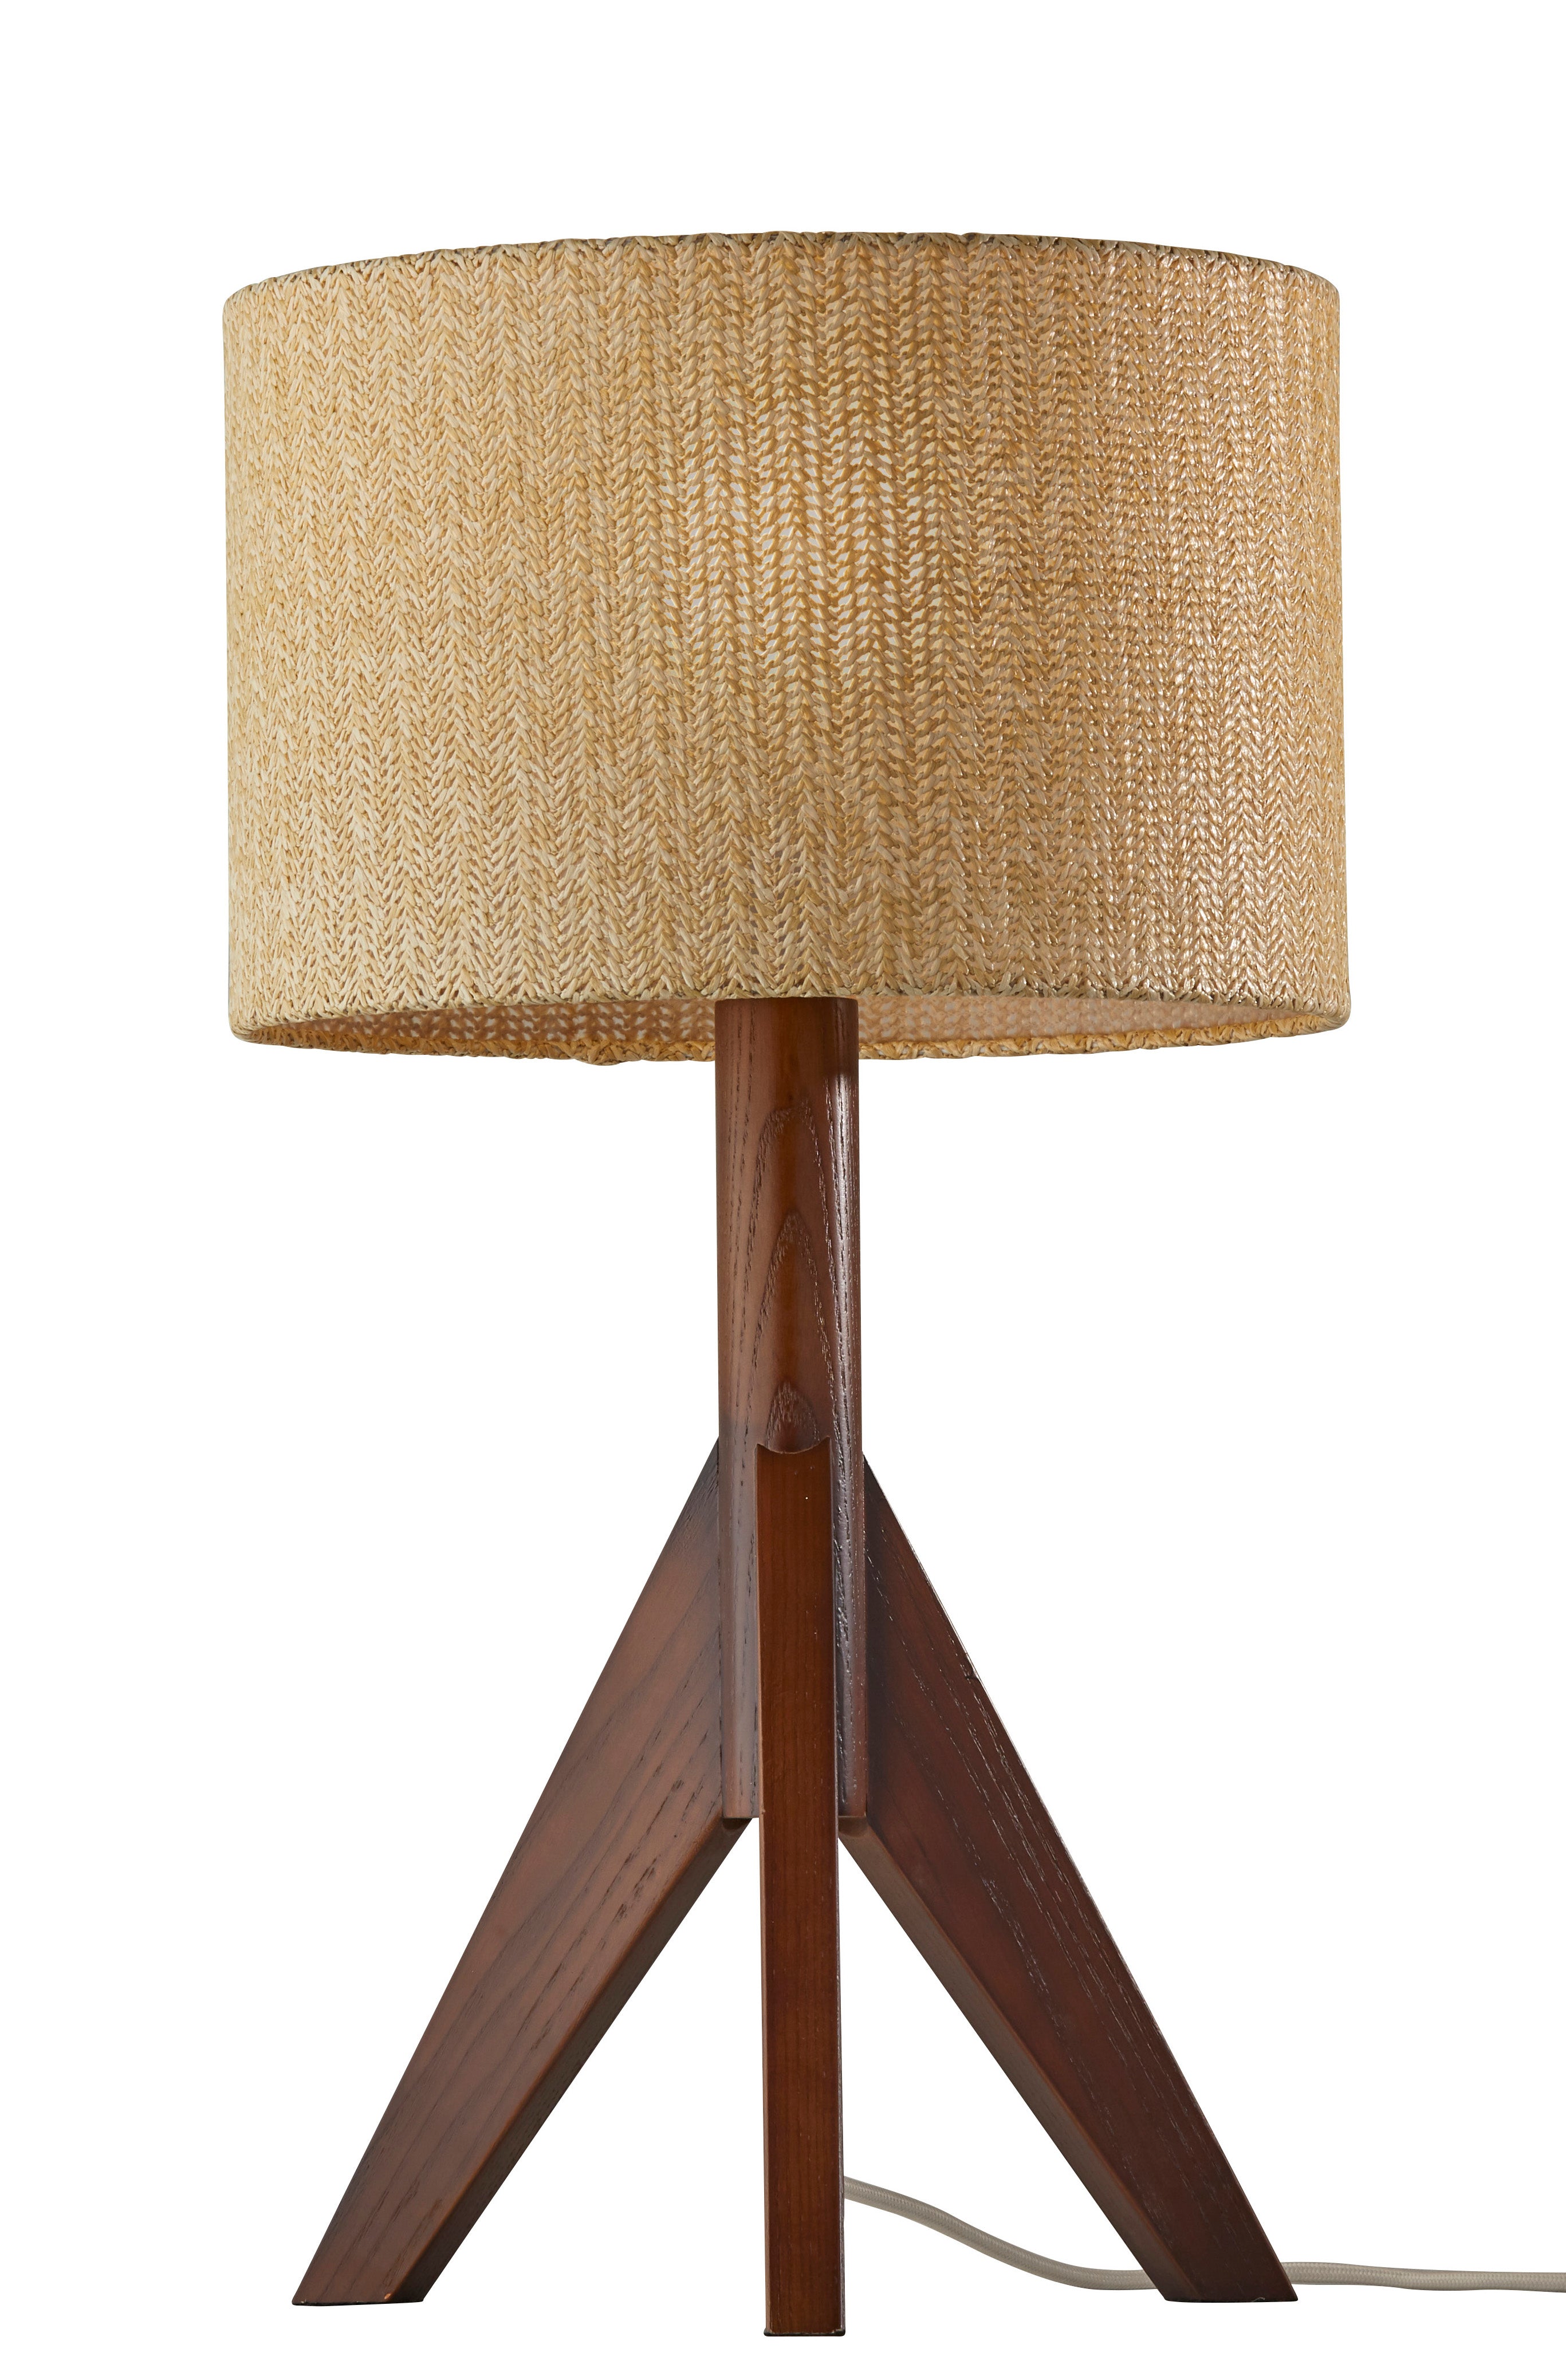 EDEN Lampe sur table Bois - 3207-15 | ADESSO